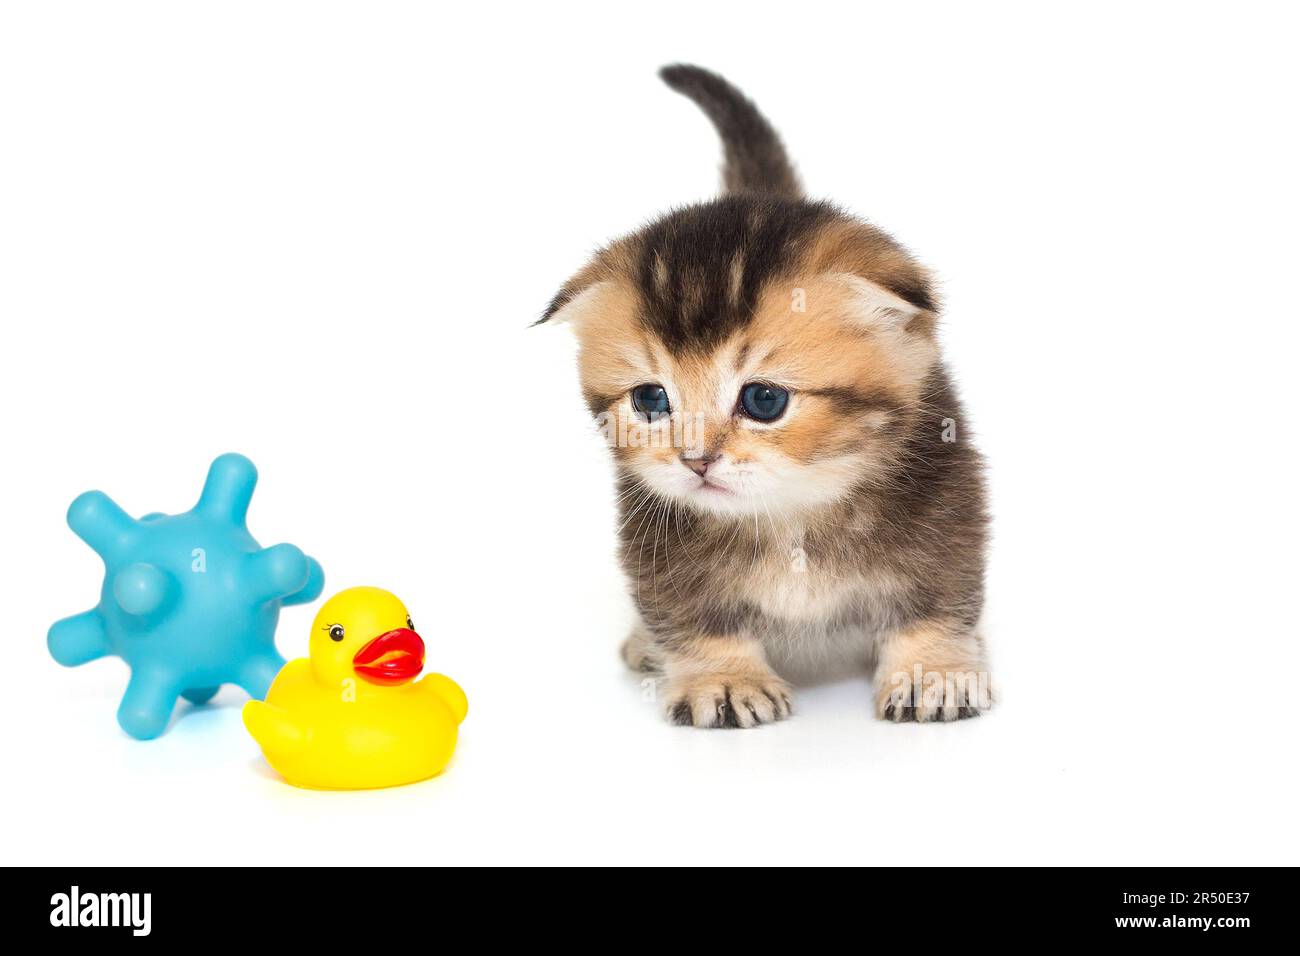 Petit chaton au gingembre et jouets, isolés sur fond blanc Banque D'Images